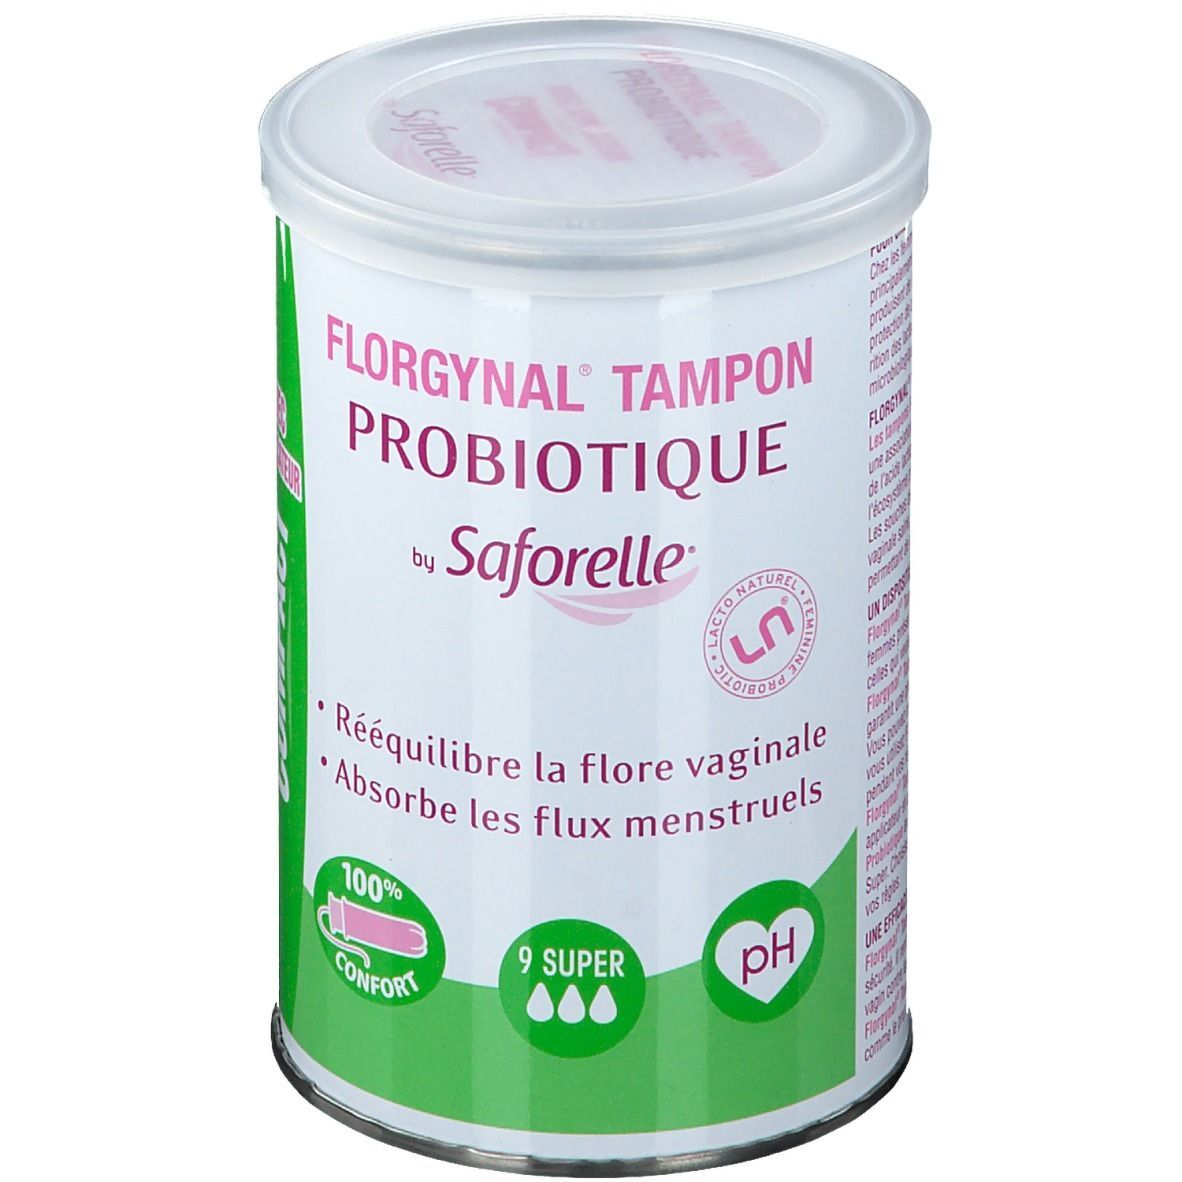 Saforelle® Florgynal Tampon Probiotique 9 Super Compact pc(s) tampon(s)